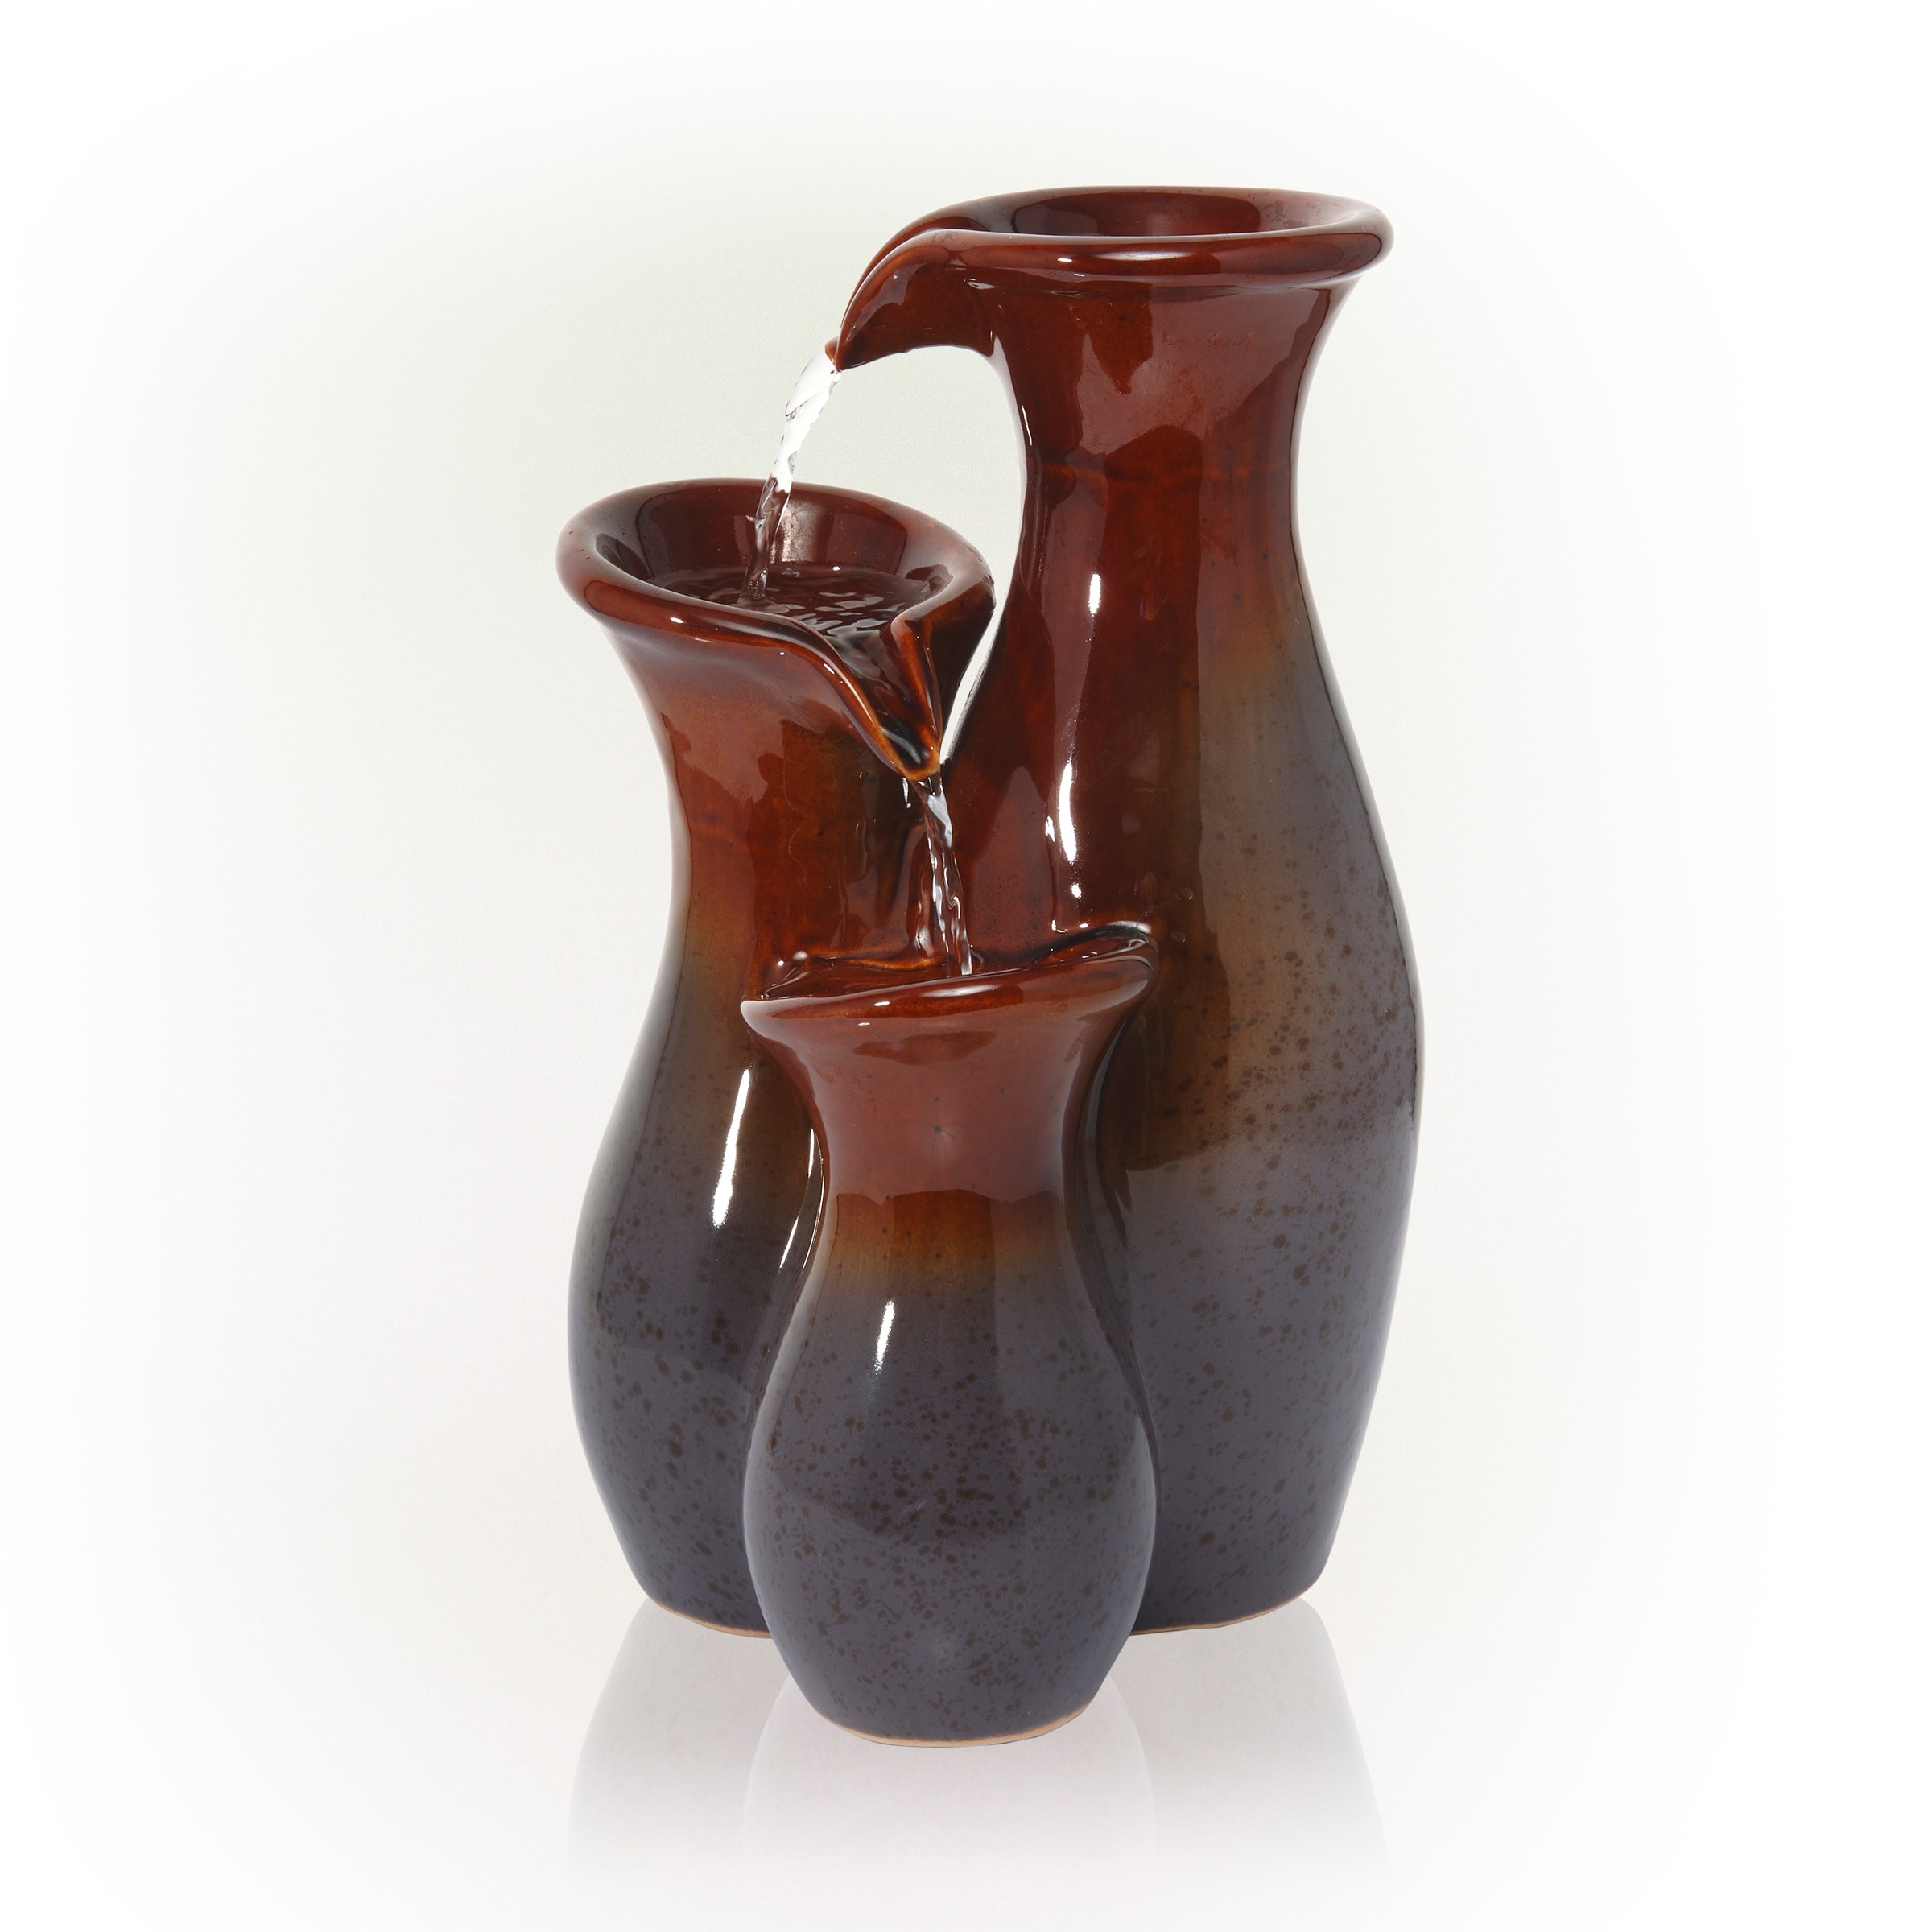 Clay Ceramic Decorative Jug Vase Green & Bronze Glossy Glaze Finish 12" Tall New 